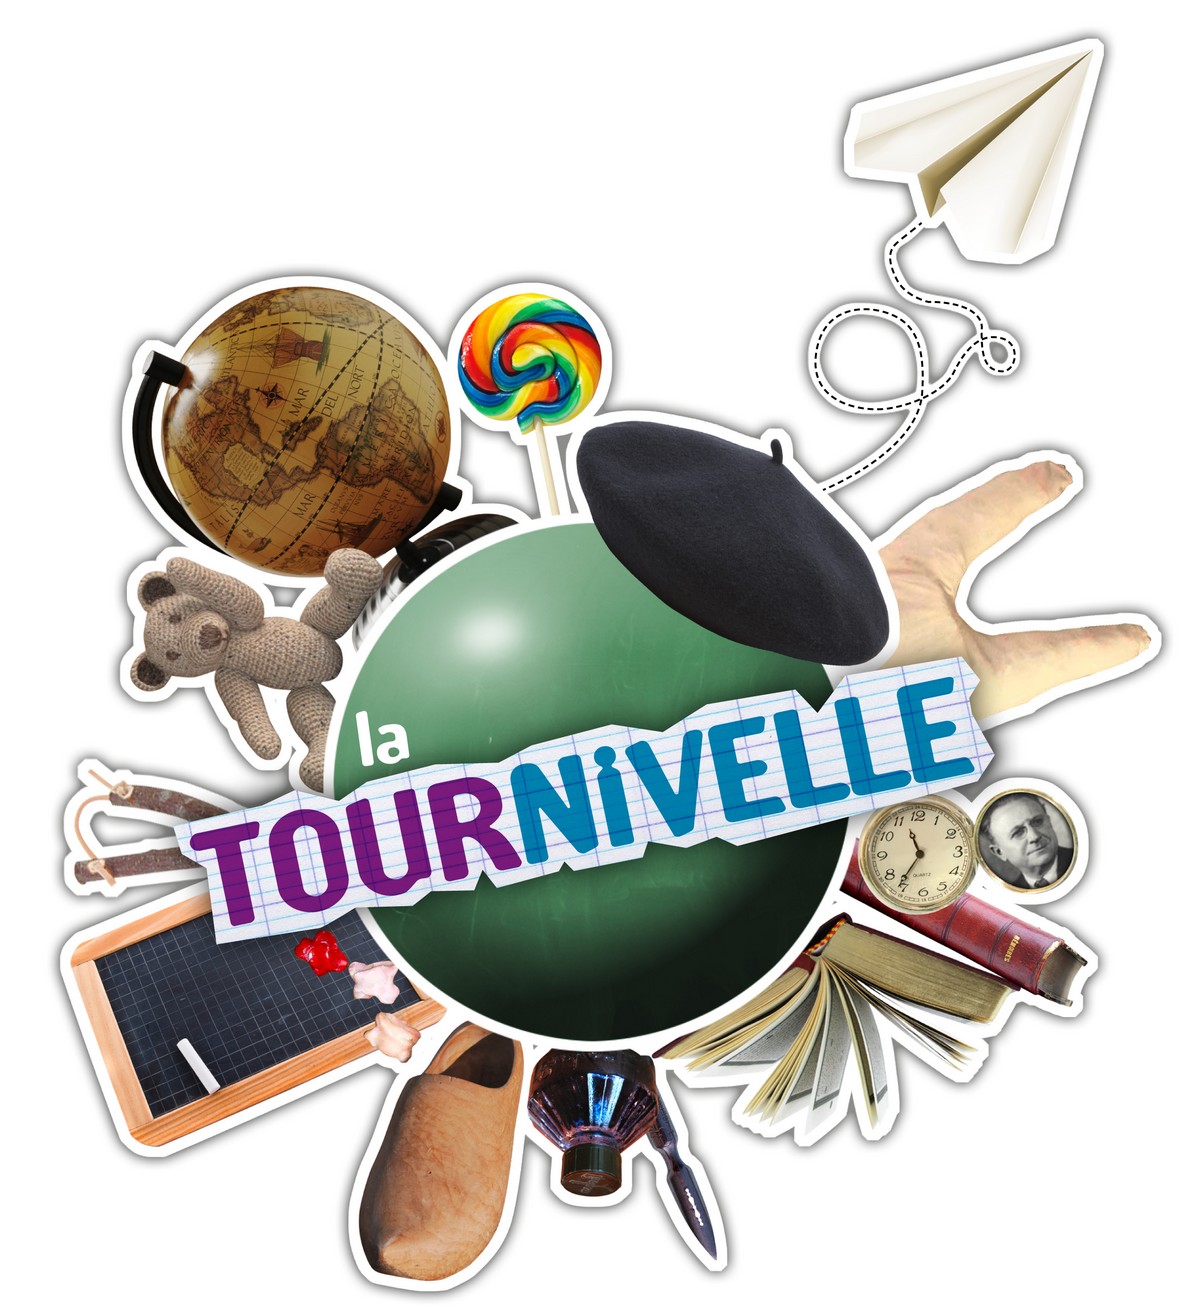 Journées du Patrimoine - Tour Nivelle null France null null null null